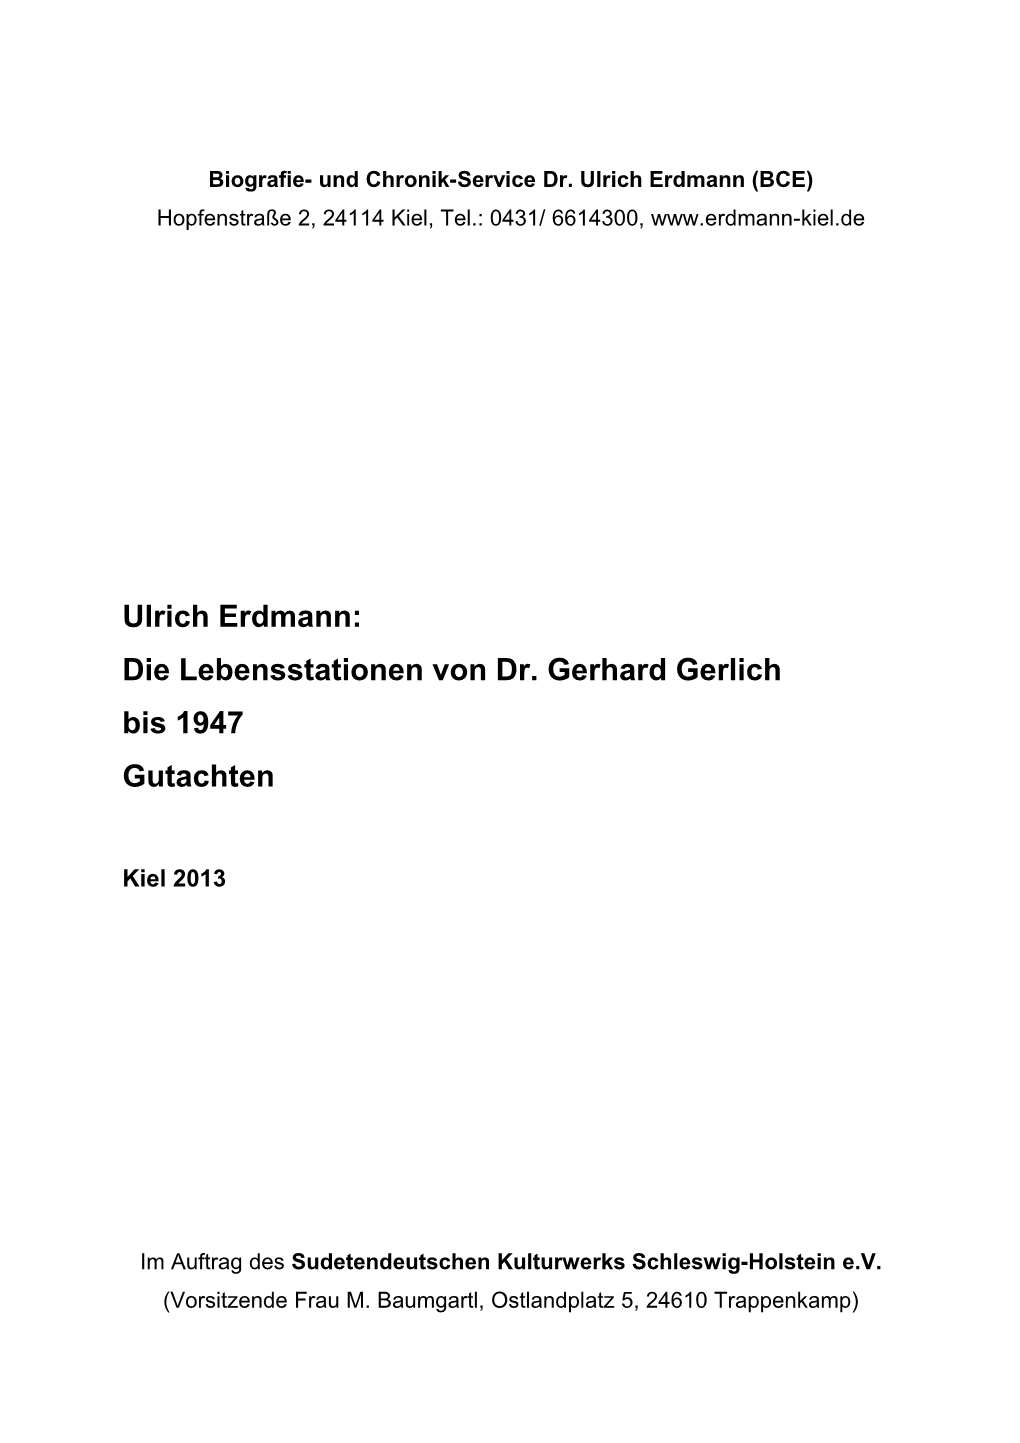 Die Lebensstationen Von Dr. Gerhard Gerlich Bis 1947 Gutachten